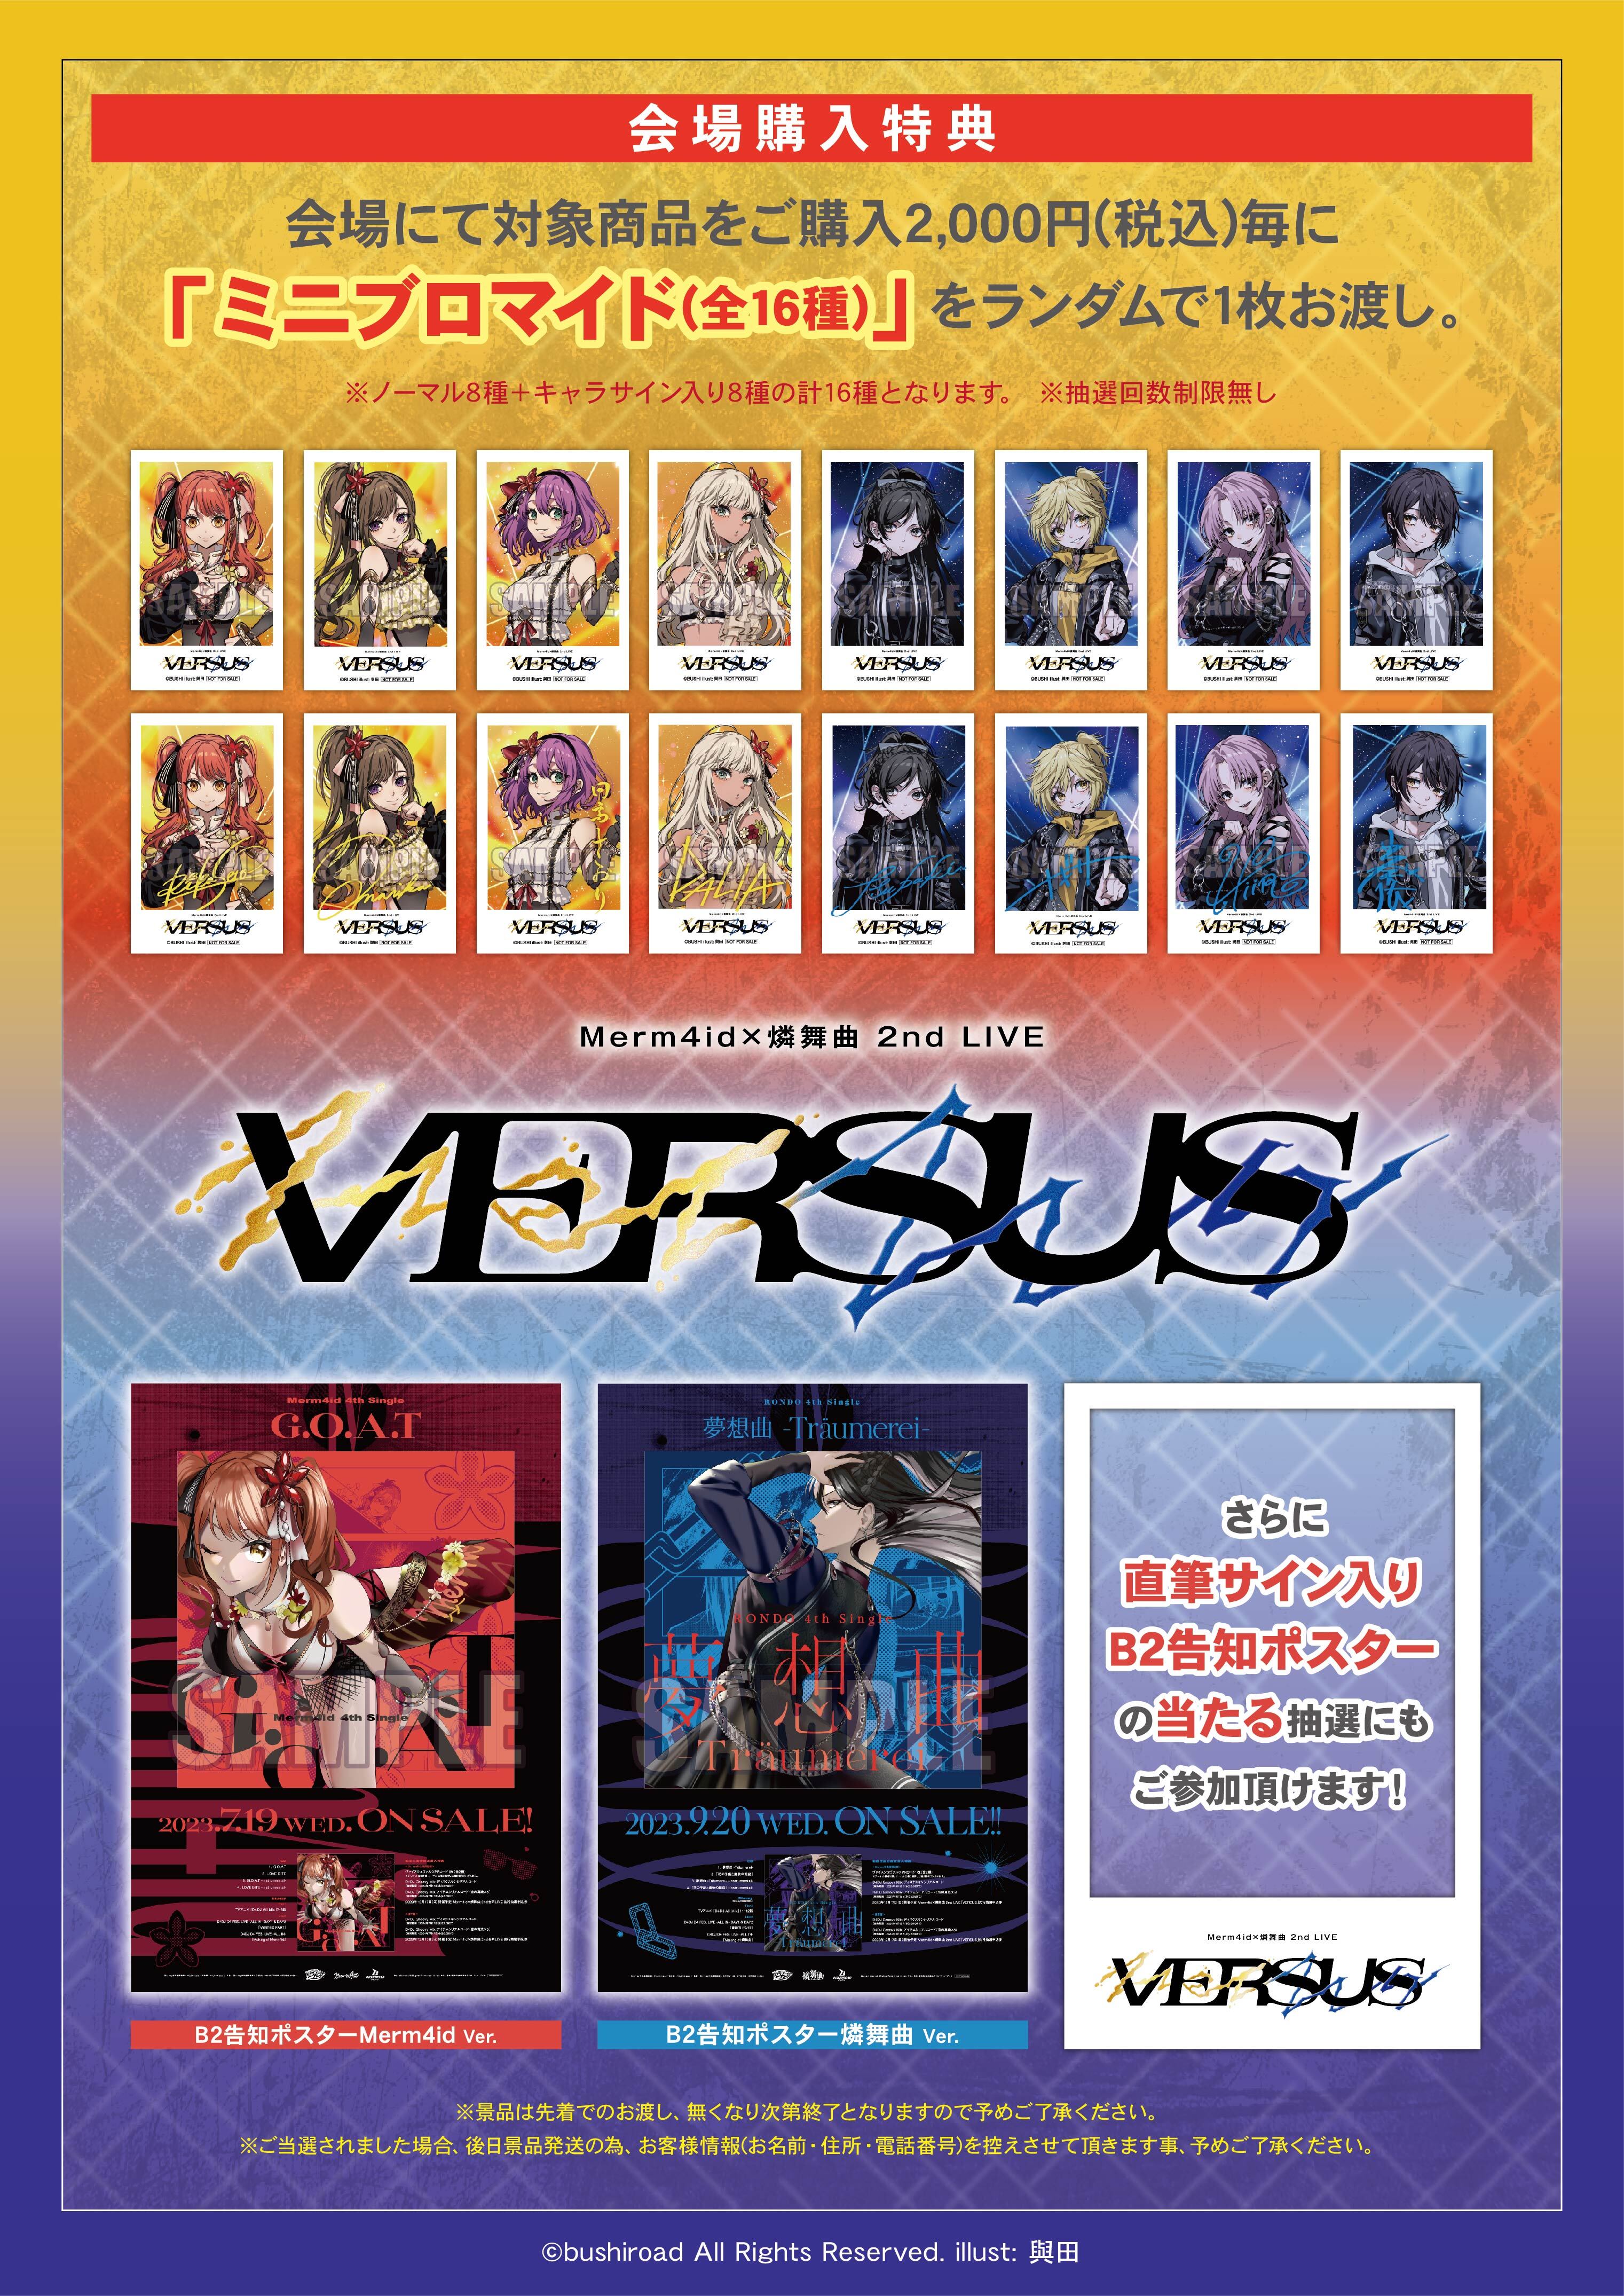 Merm4id×燐舞曲 2nd LIVE「VERSUS」 | LIVE | D4DJ(ディーフォーディー 